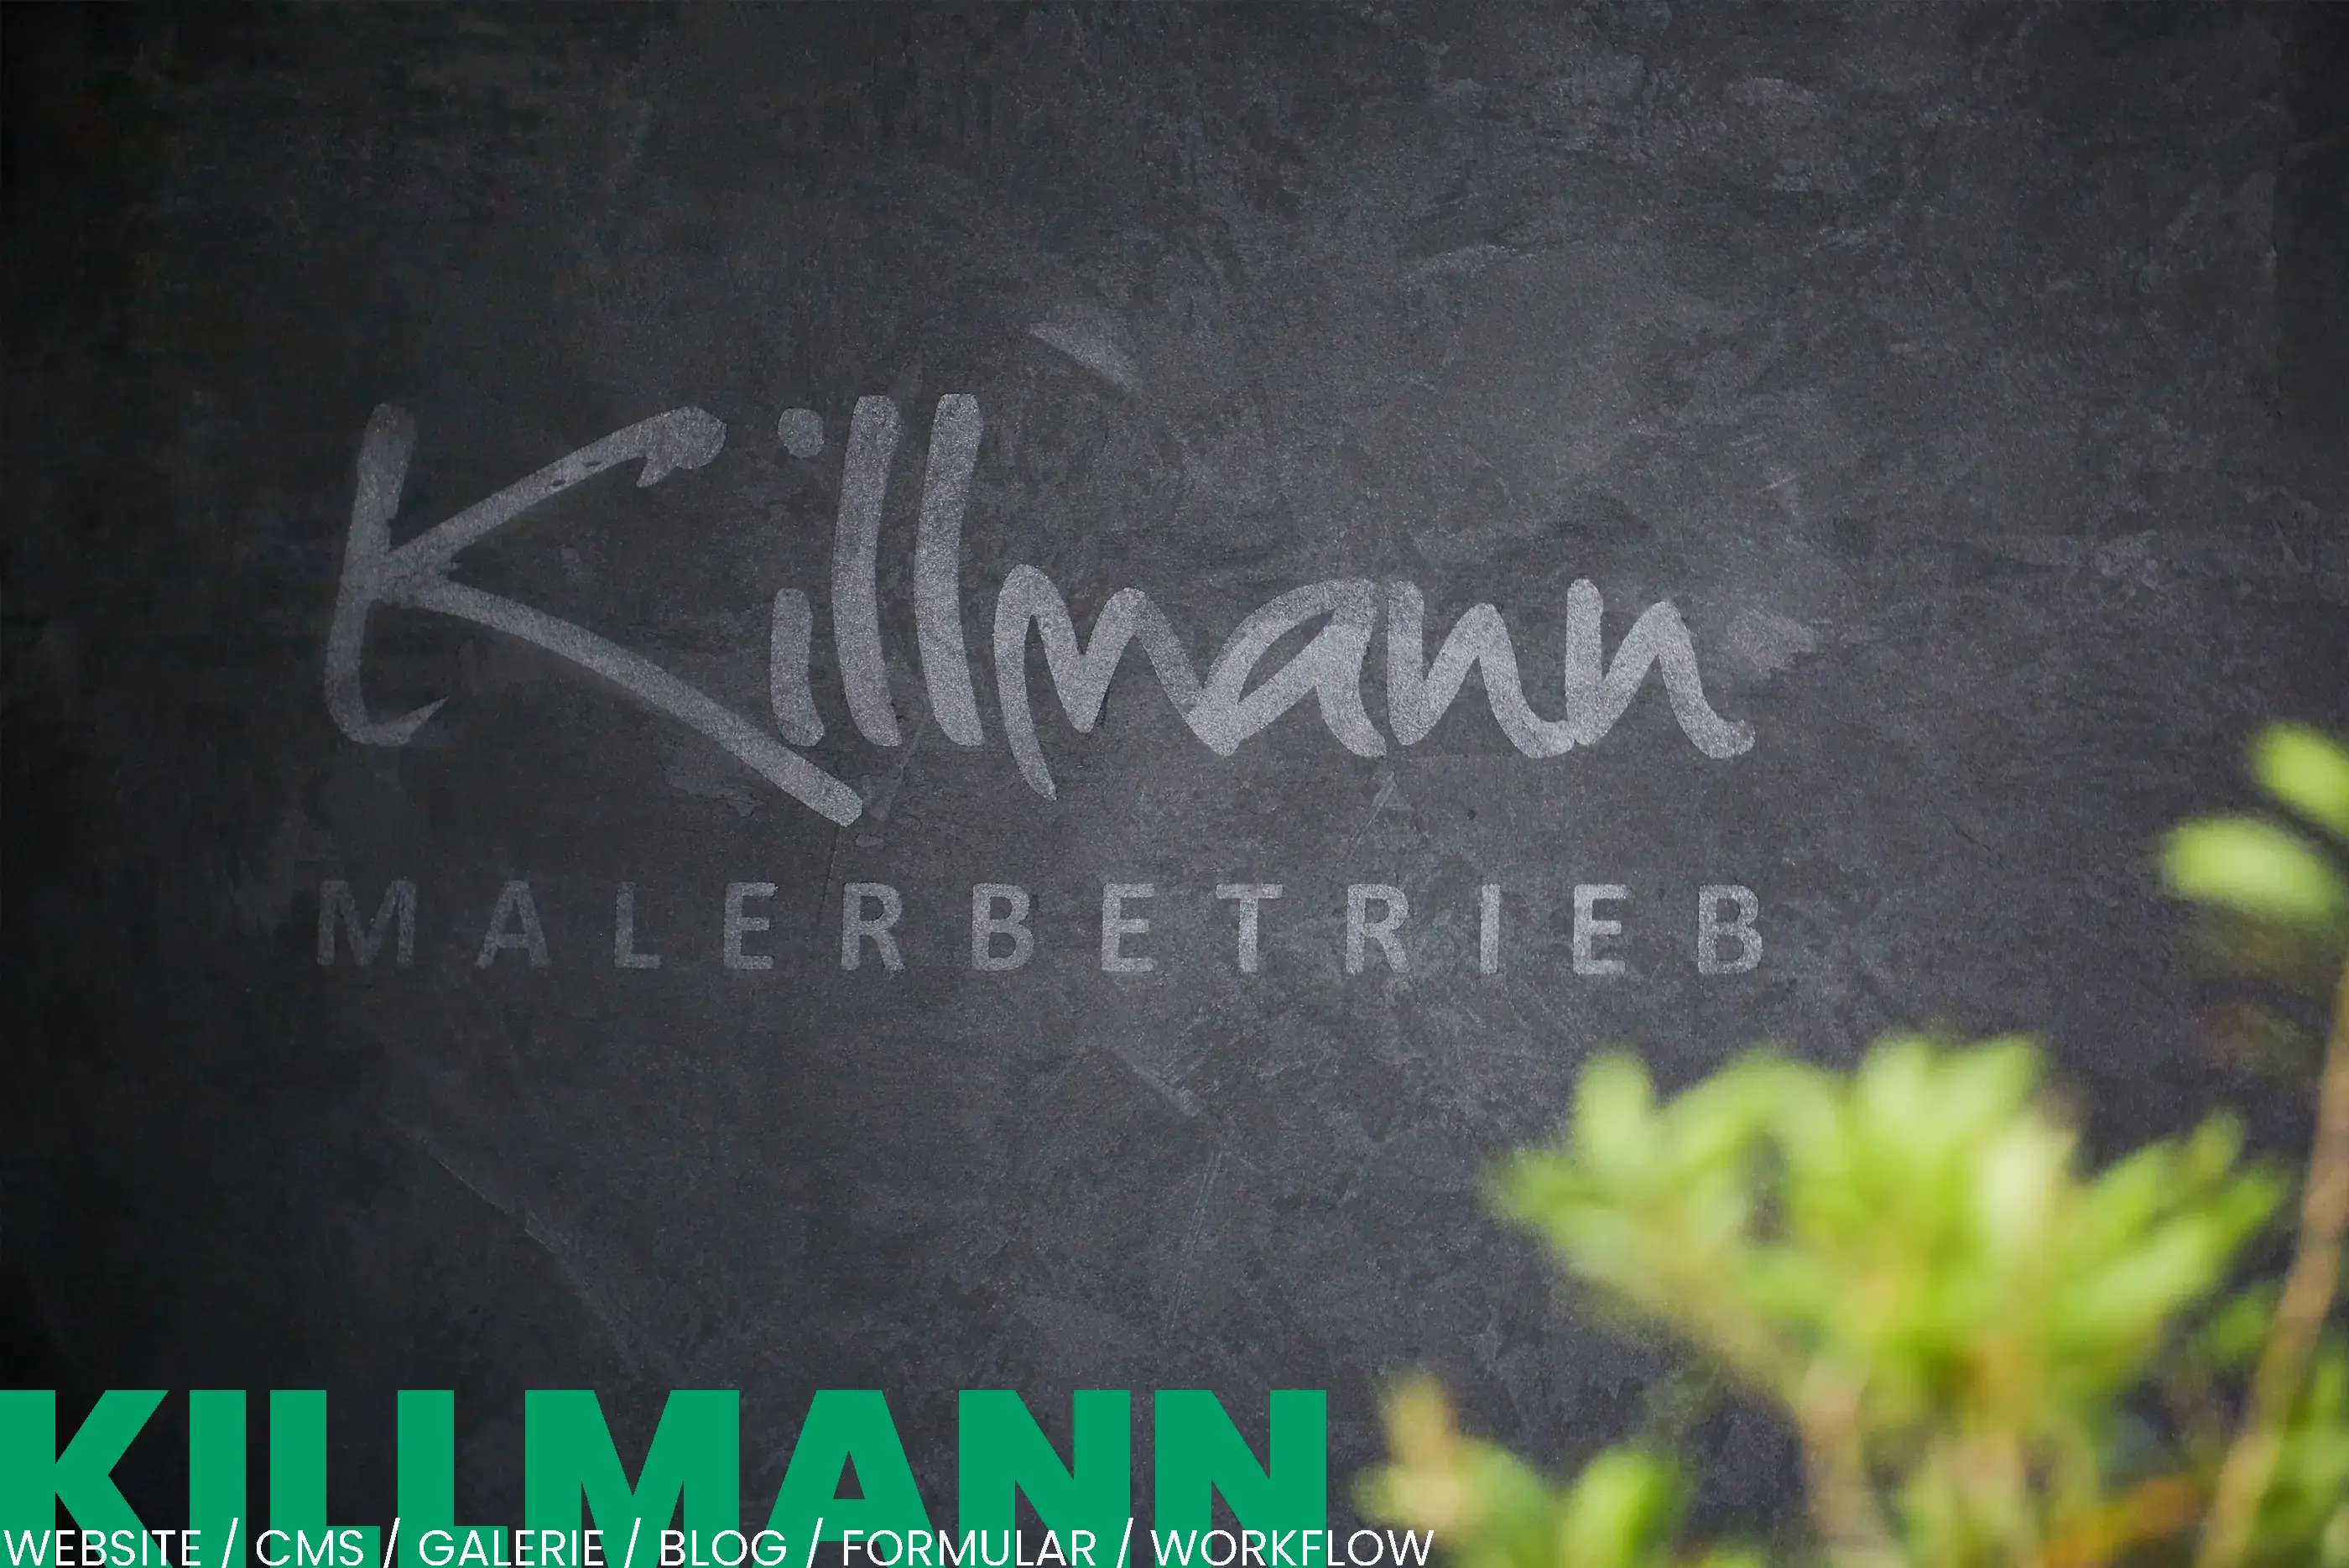 Malerbetrieb Killmann